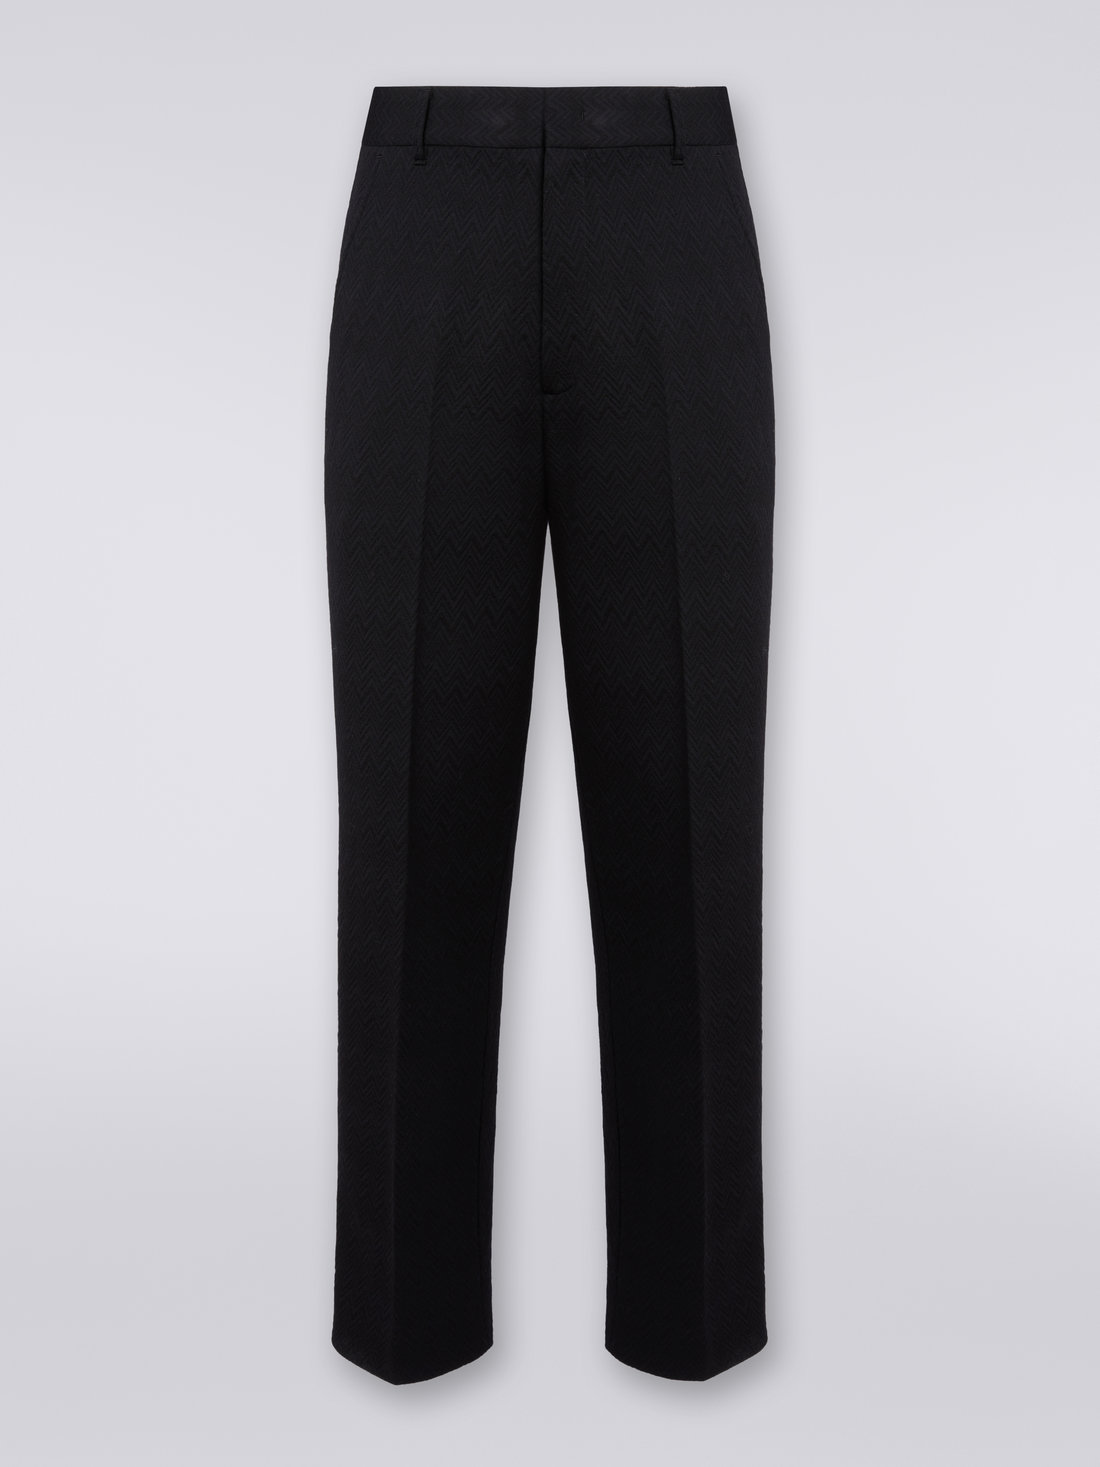 Wool blend chevron trousers, Black    - US23WI05BT005U93911 - 0